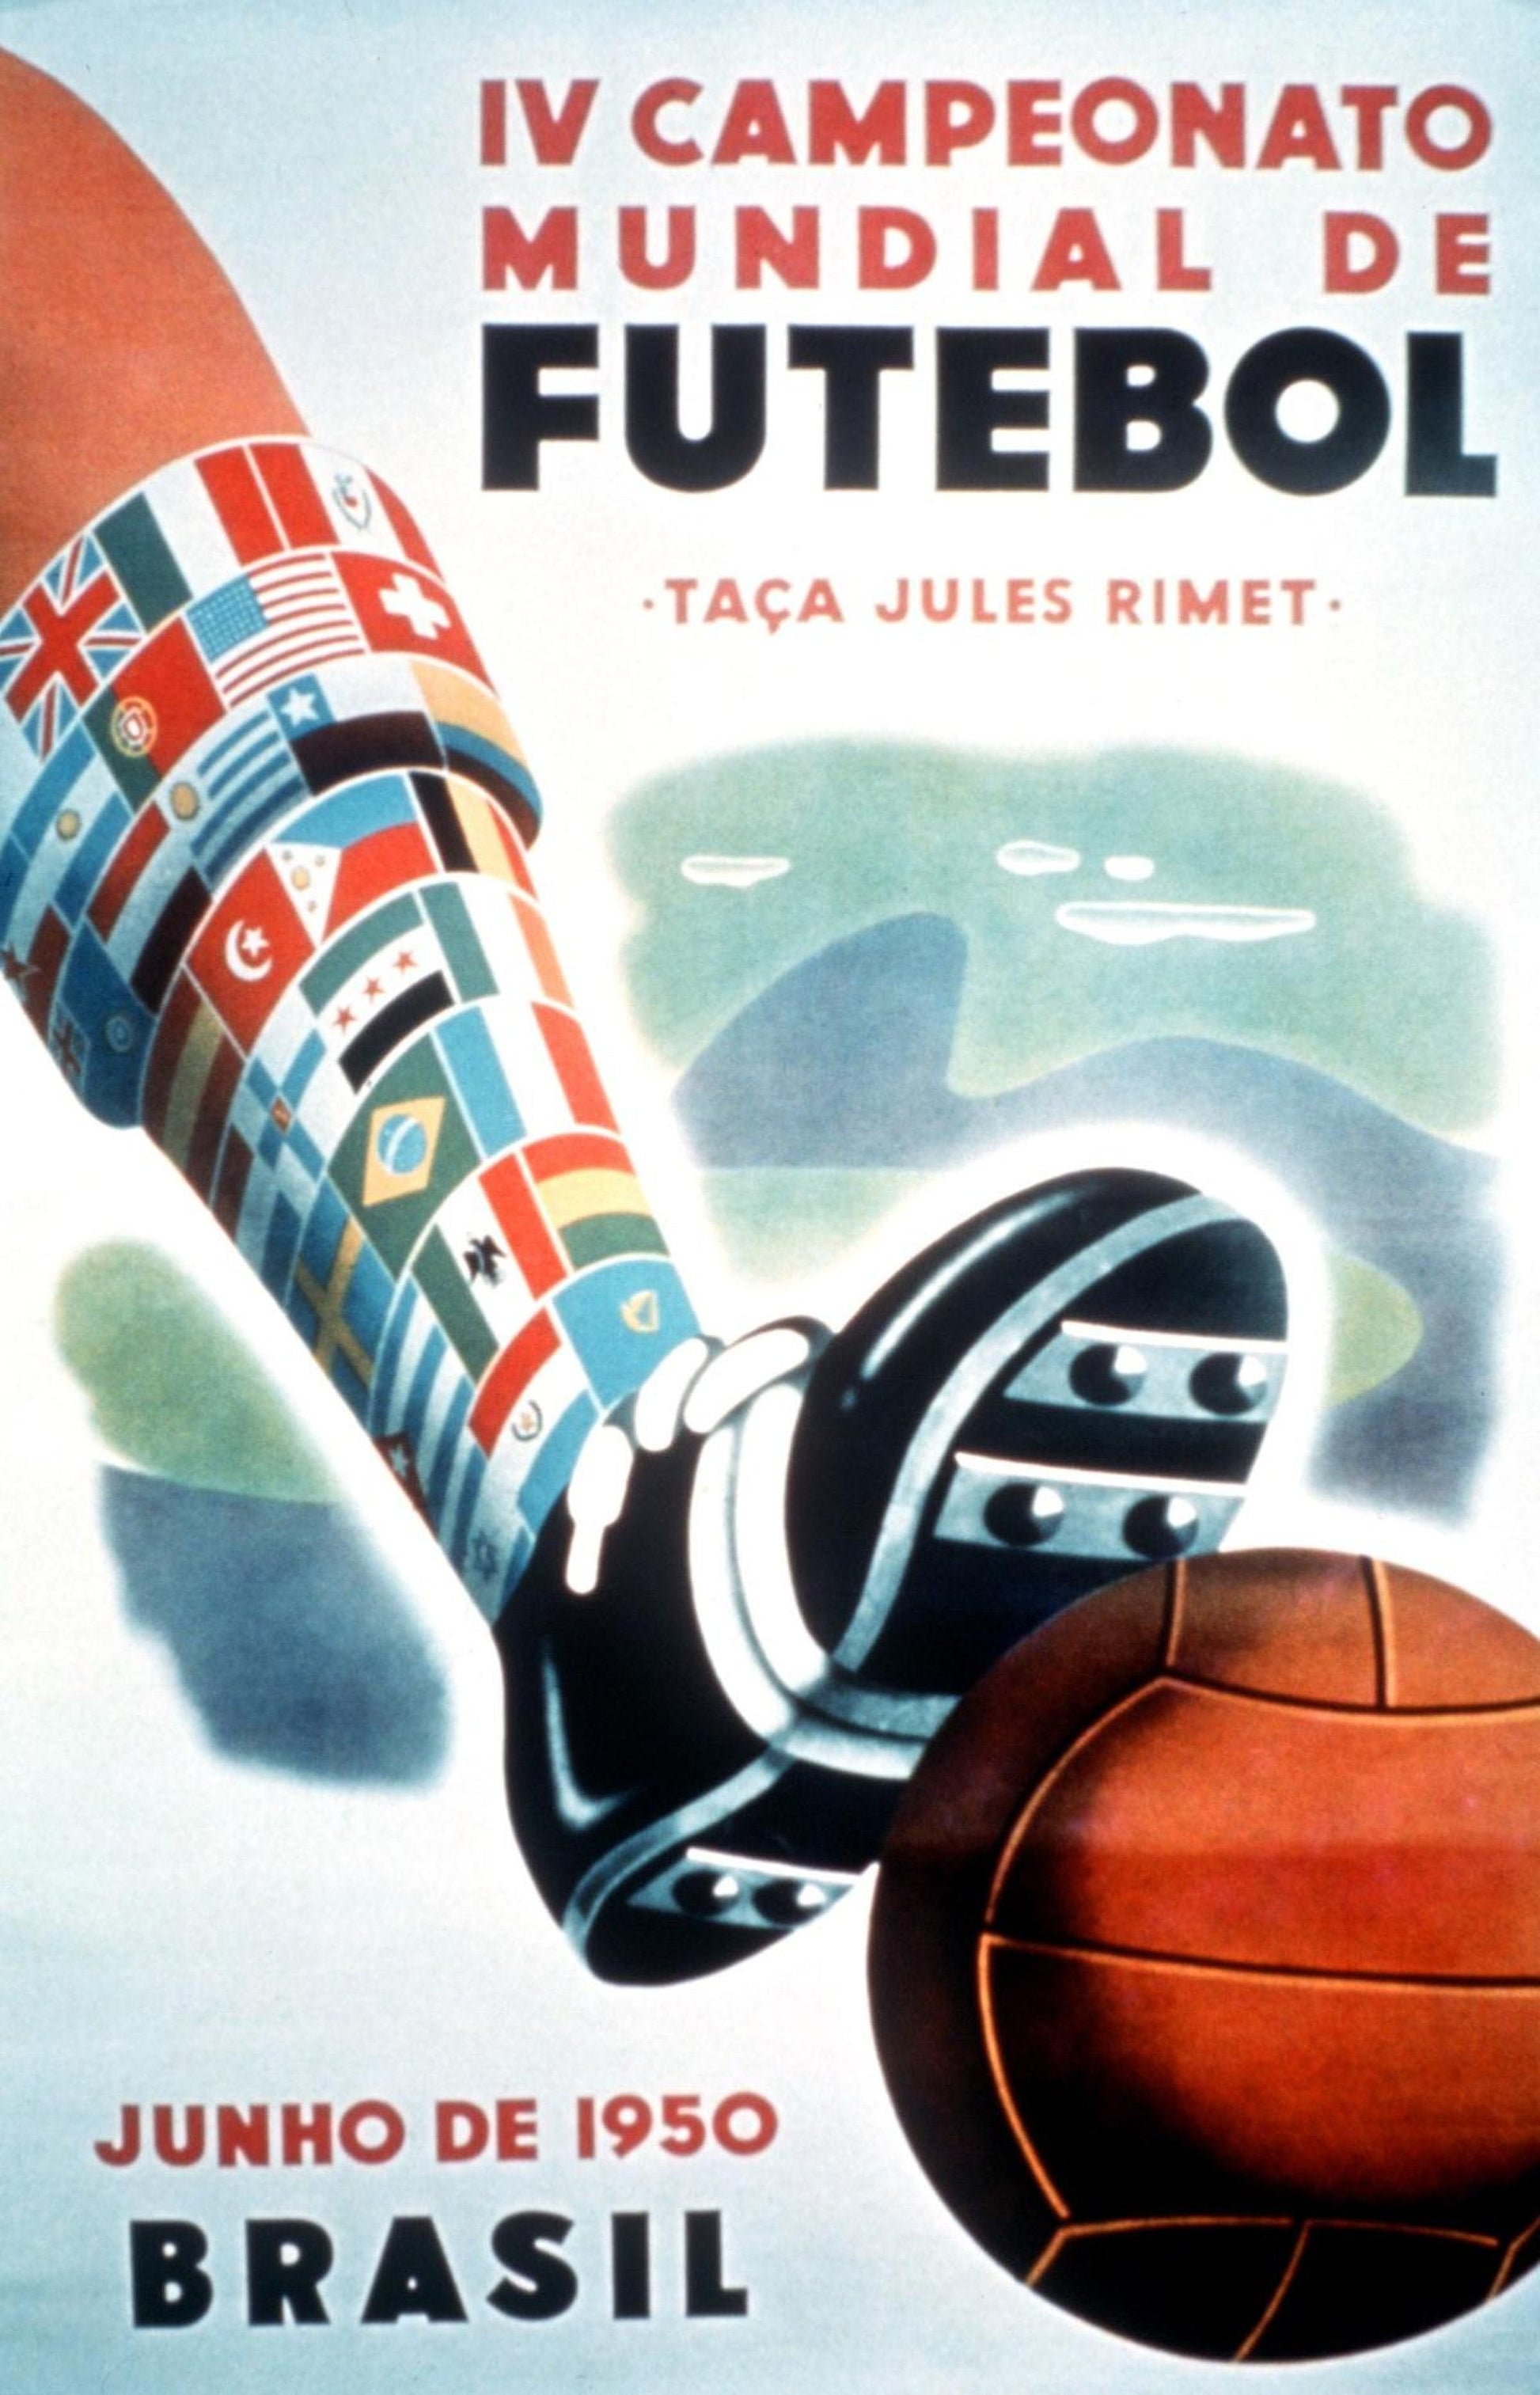 Football World Cup poster art print (Brazil 1950)  The Trumpet Shop   